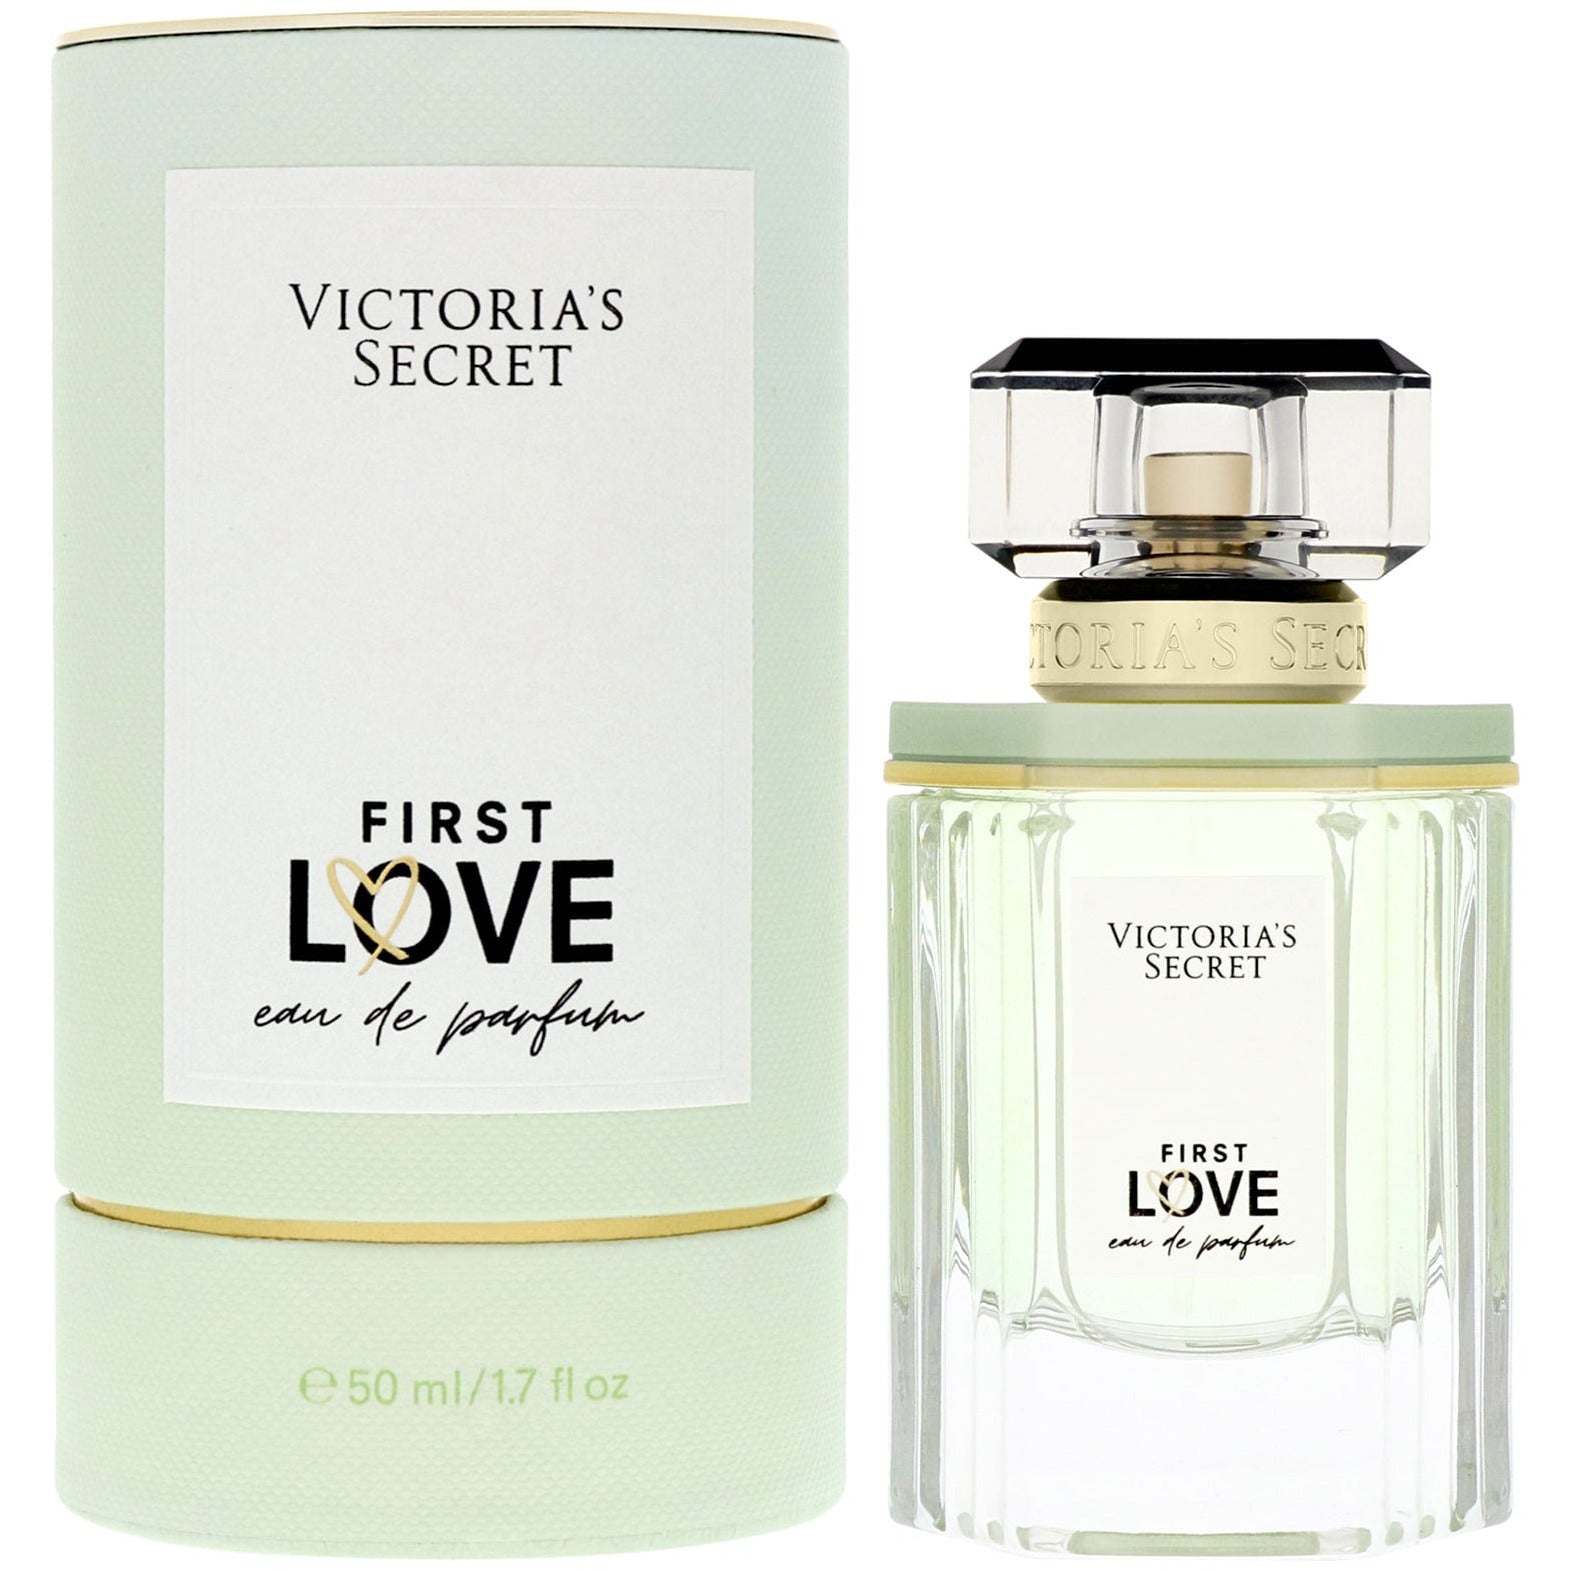    Victoria_s-Secret-First-Love-perfume-chile